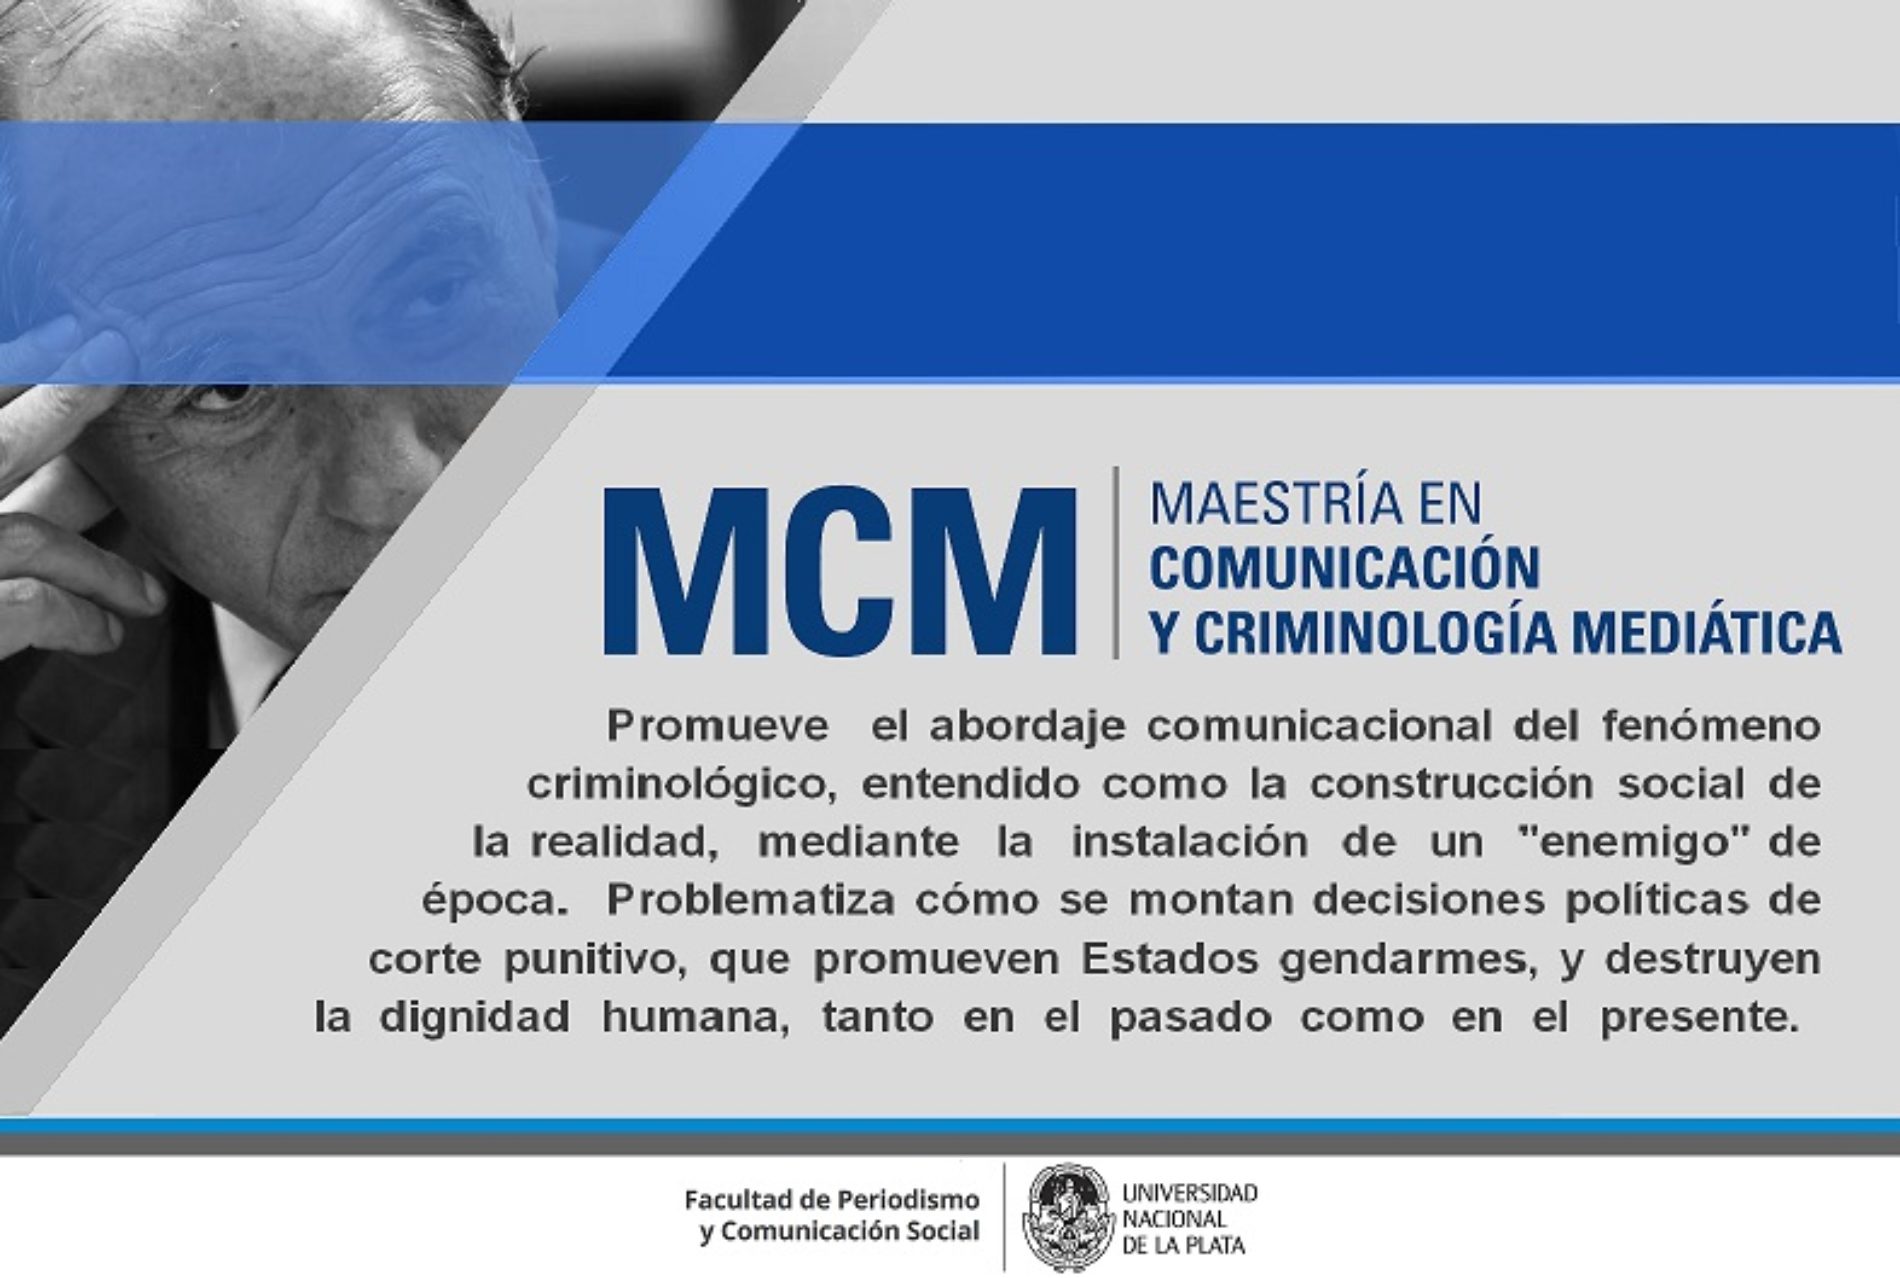 «Maestría en Comunicación y Criminología Mediática»